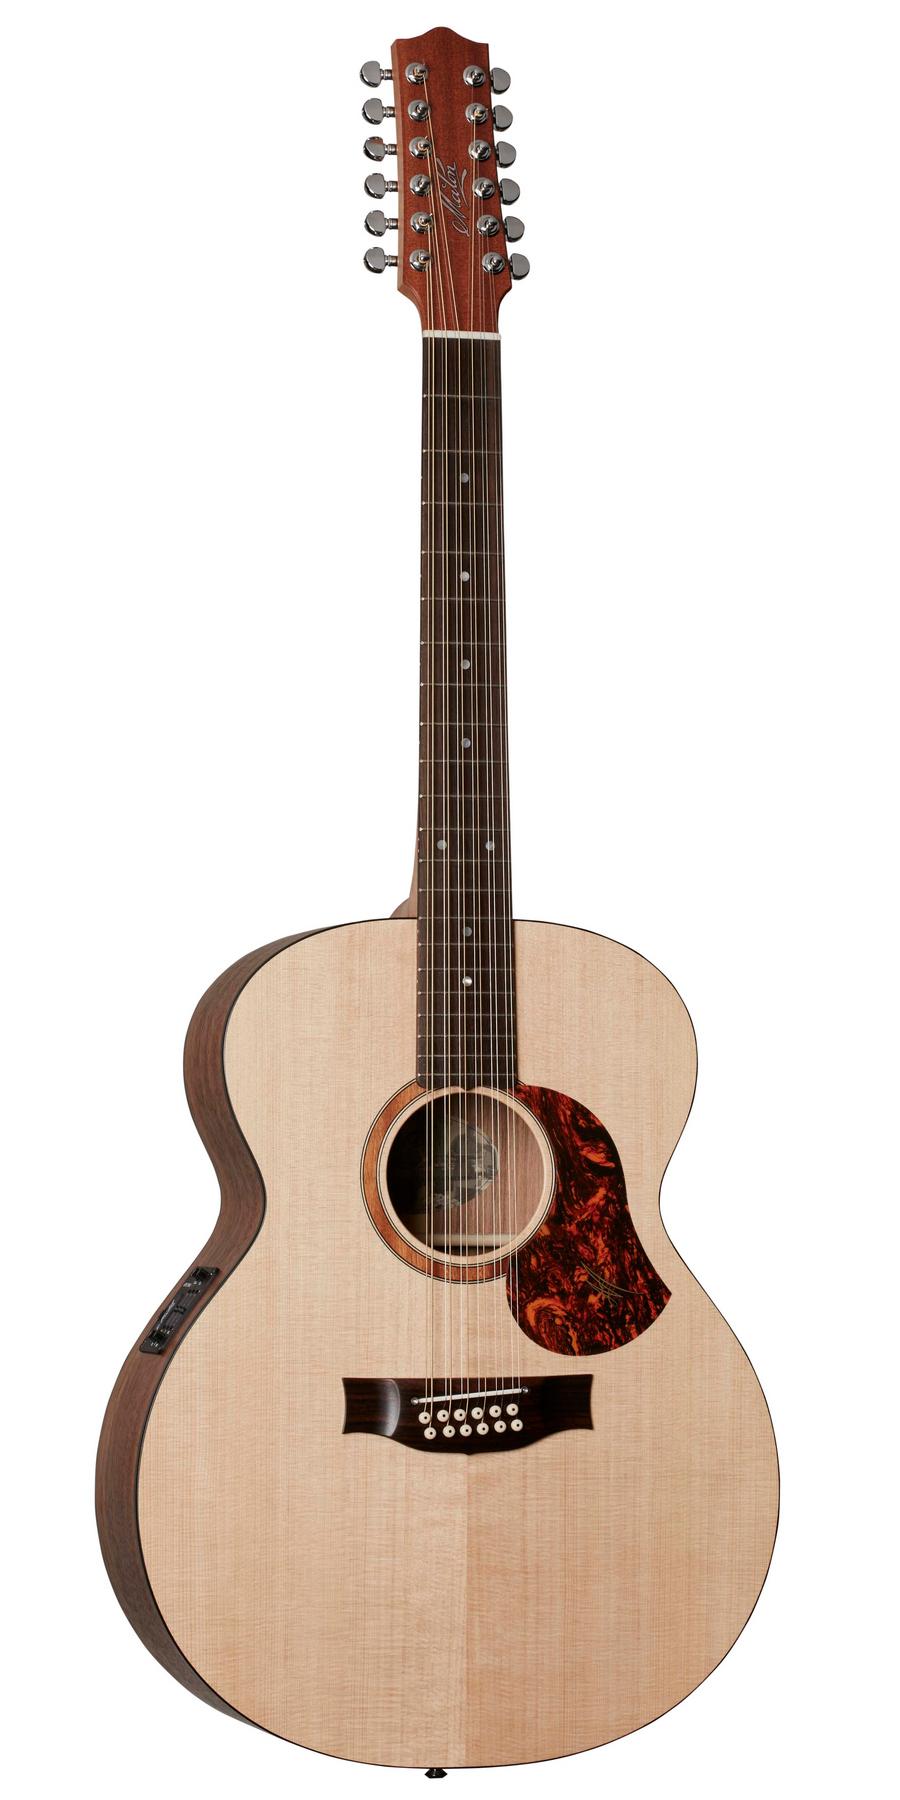 Двенадцатиструнная гитара Maton SRS70J